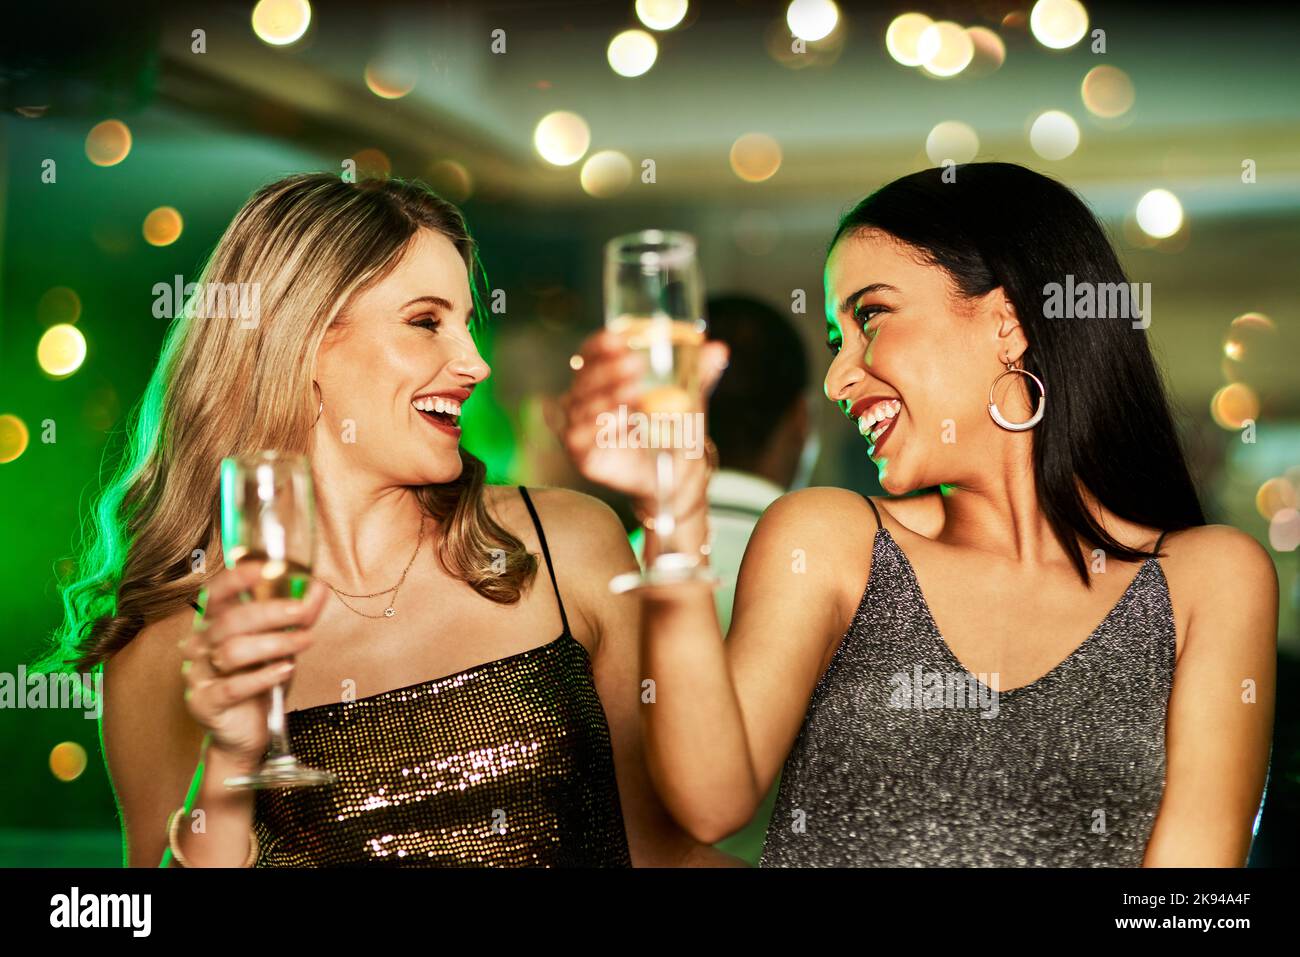 Sie wissen, wie man zwei fröhliche junge Frauen bei einem Drink Viel Spaß., während sie auf der Tanzfläche eines Clubs in der Nacht tanzen. Stockfoto